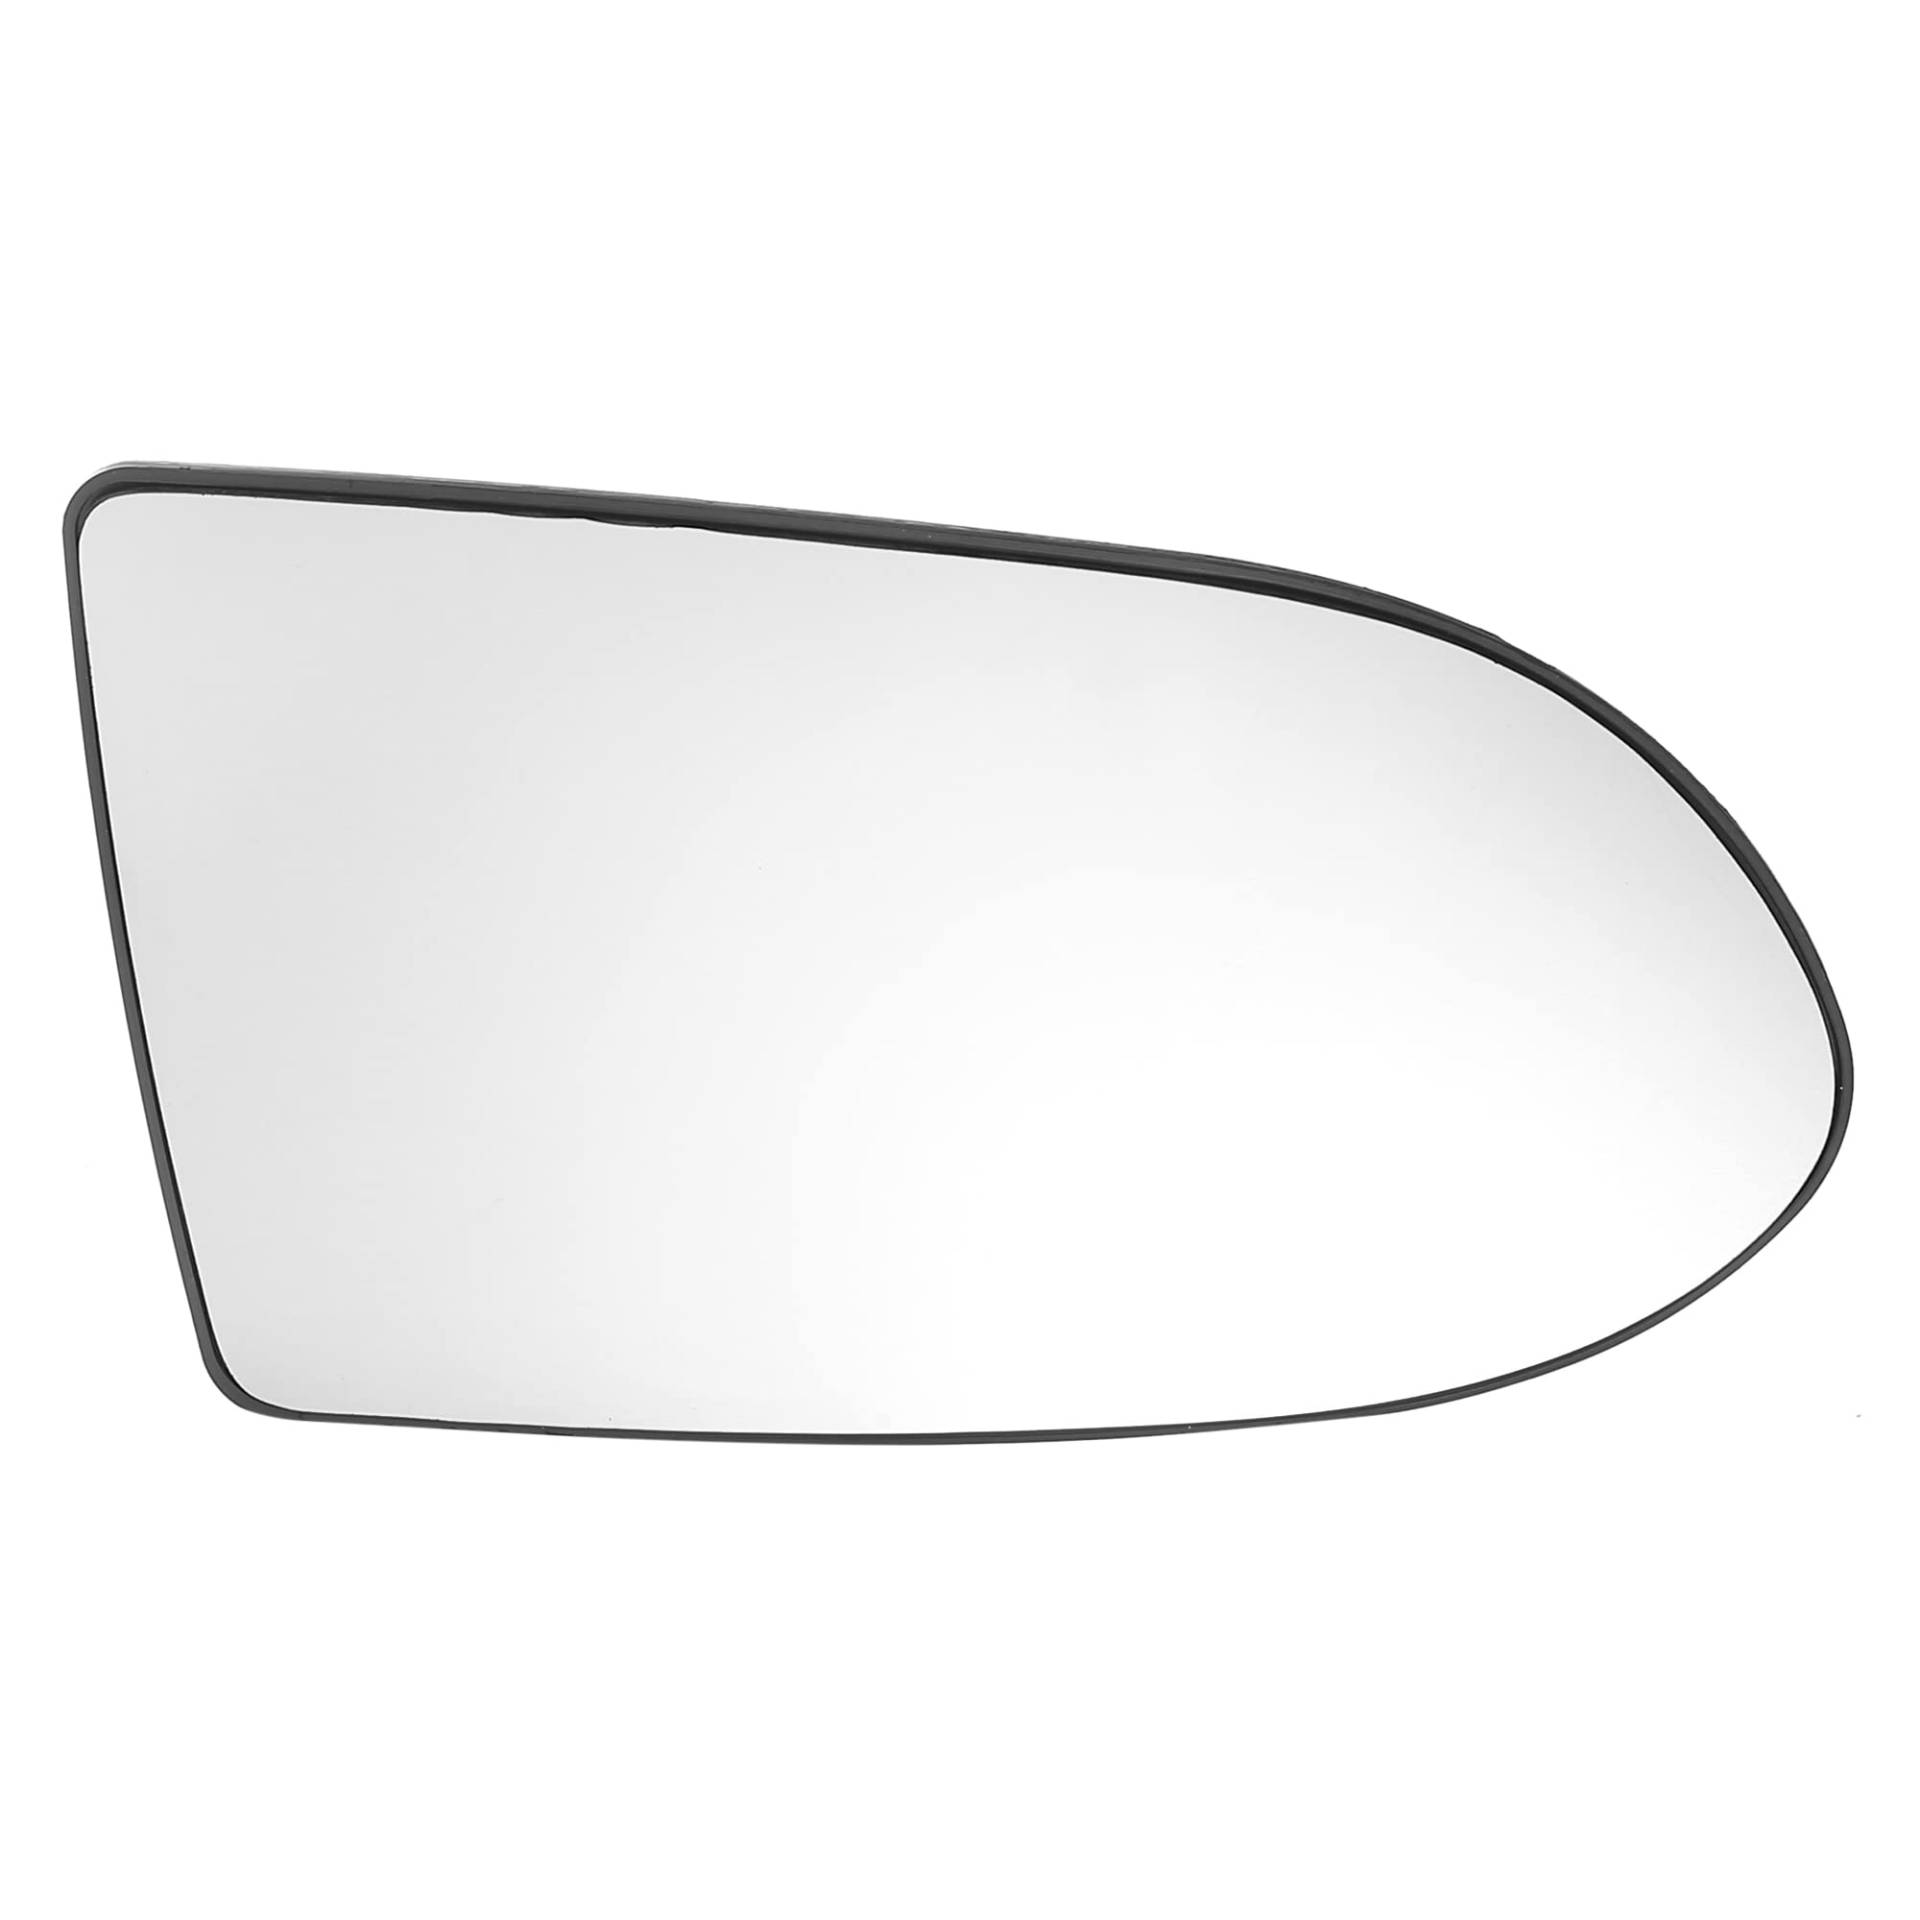 A ABSOPRO Spiegelglas Ersatz Auto Rückspiegelglas Rechts Seitenspiegel mit Heizfunktion für Opel Zafira A 1999-2005 6428750 von A ABSOPRO